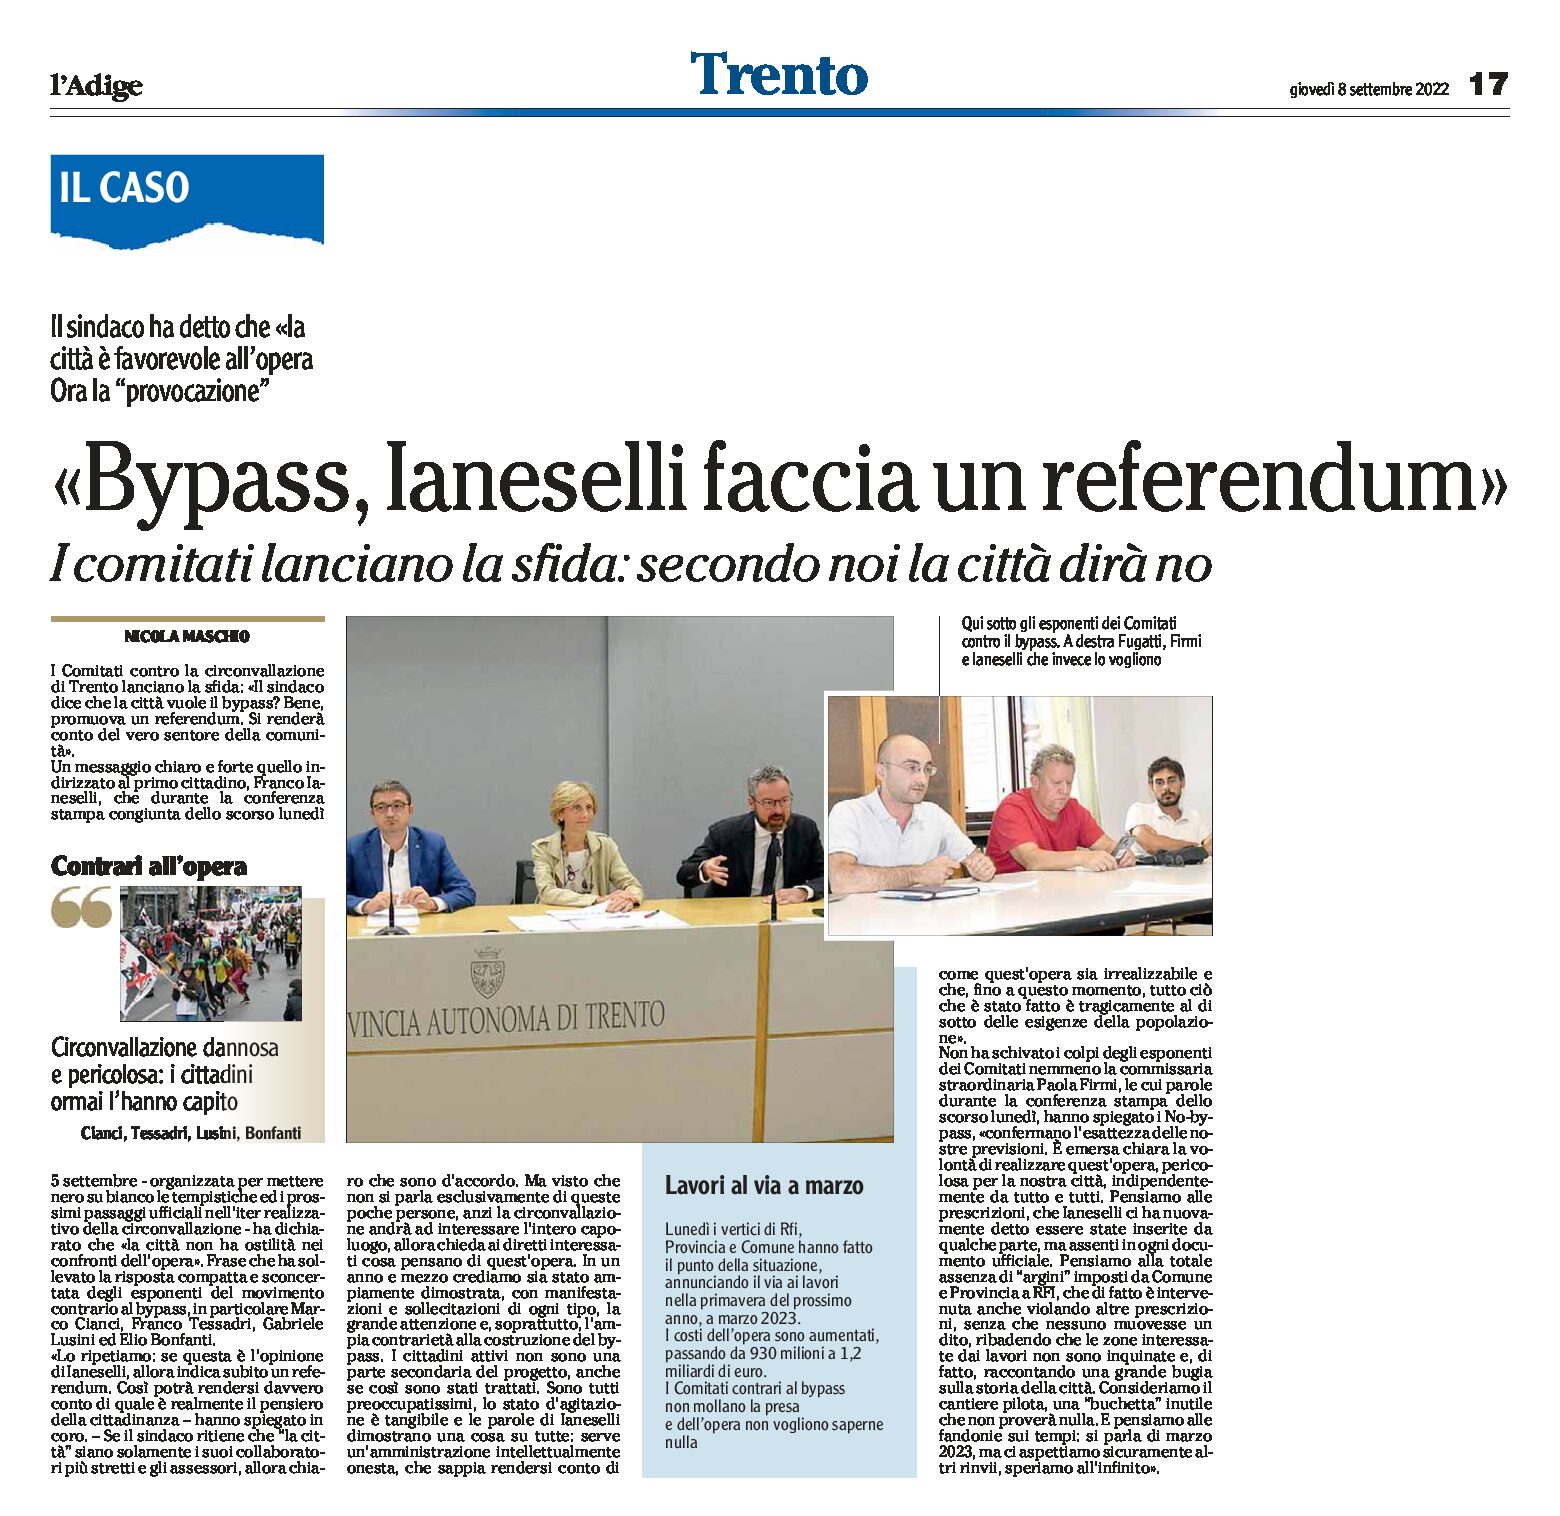 Trento, bypass: i comitati lanciano la sfida “Ianeselli faccia un referendum”